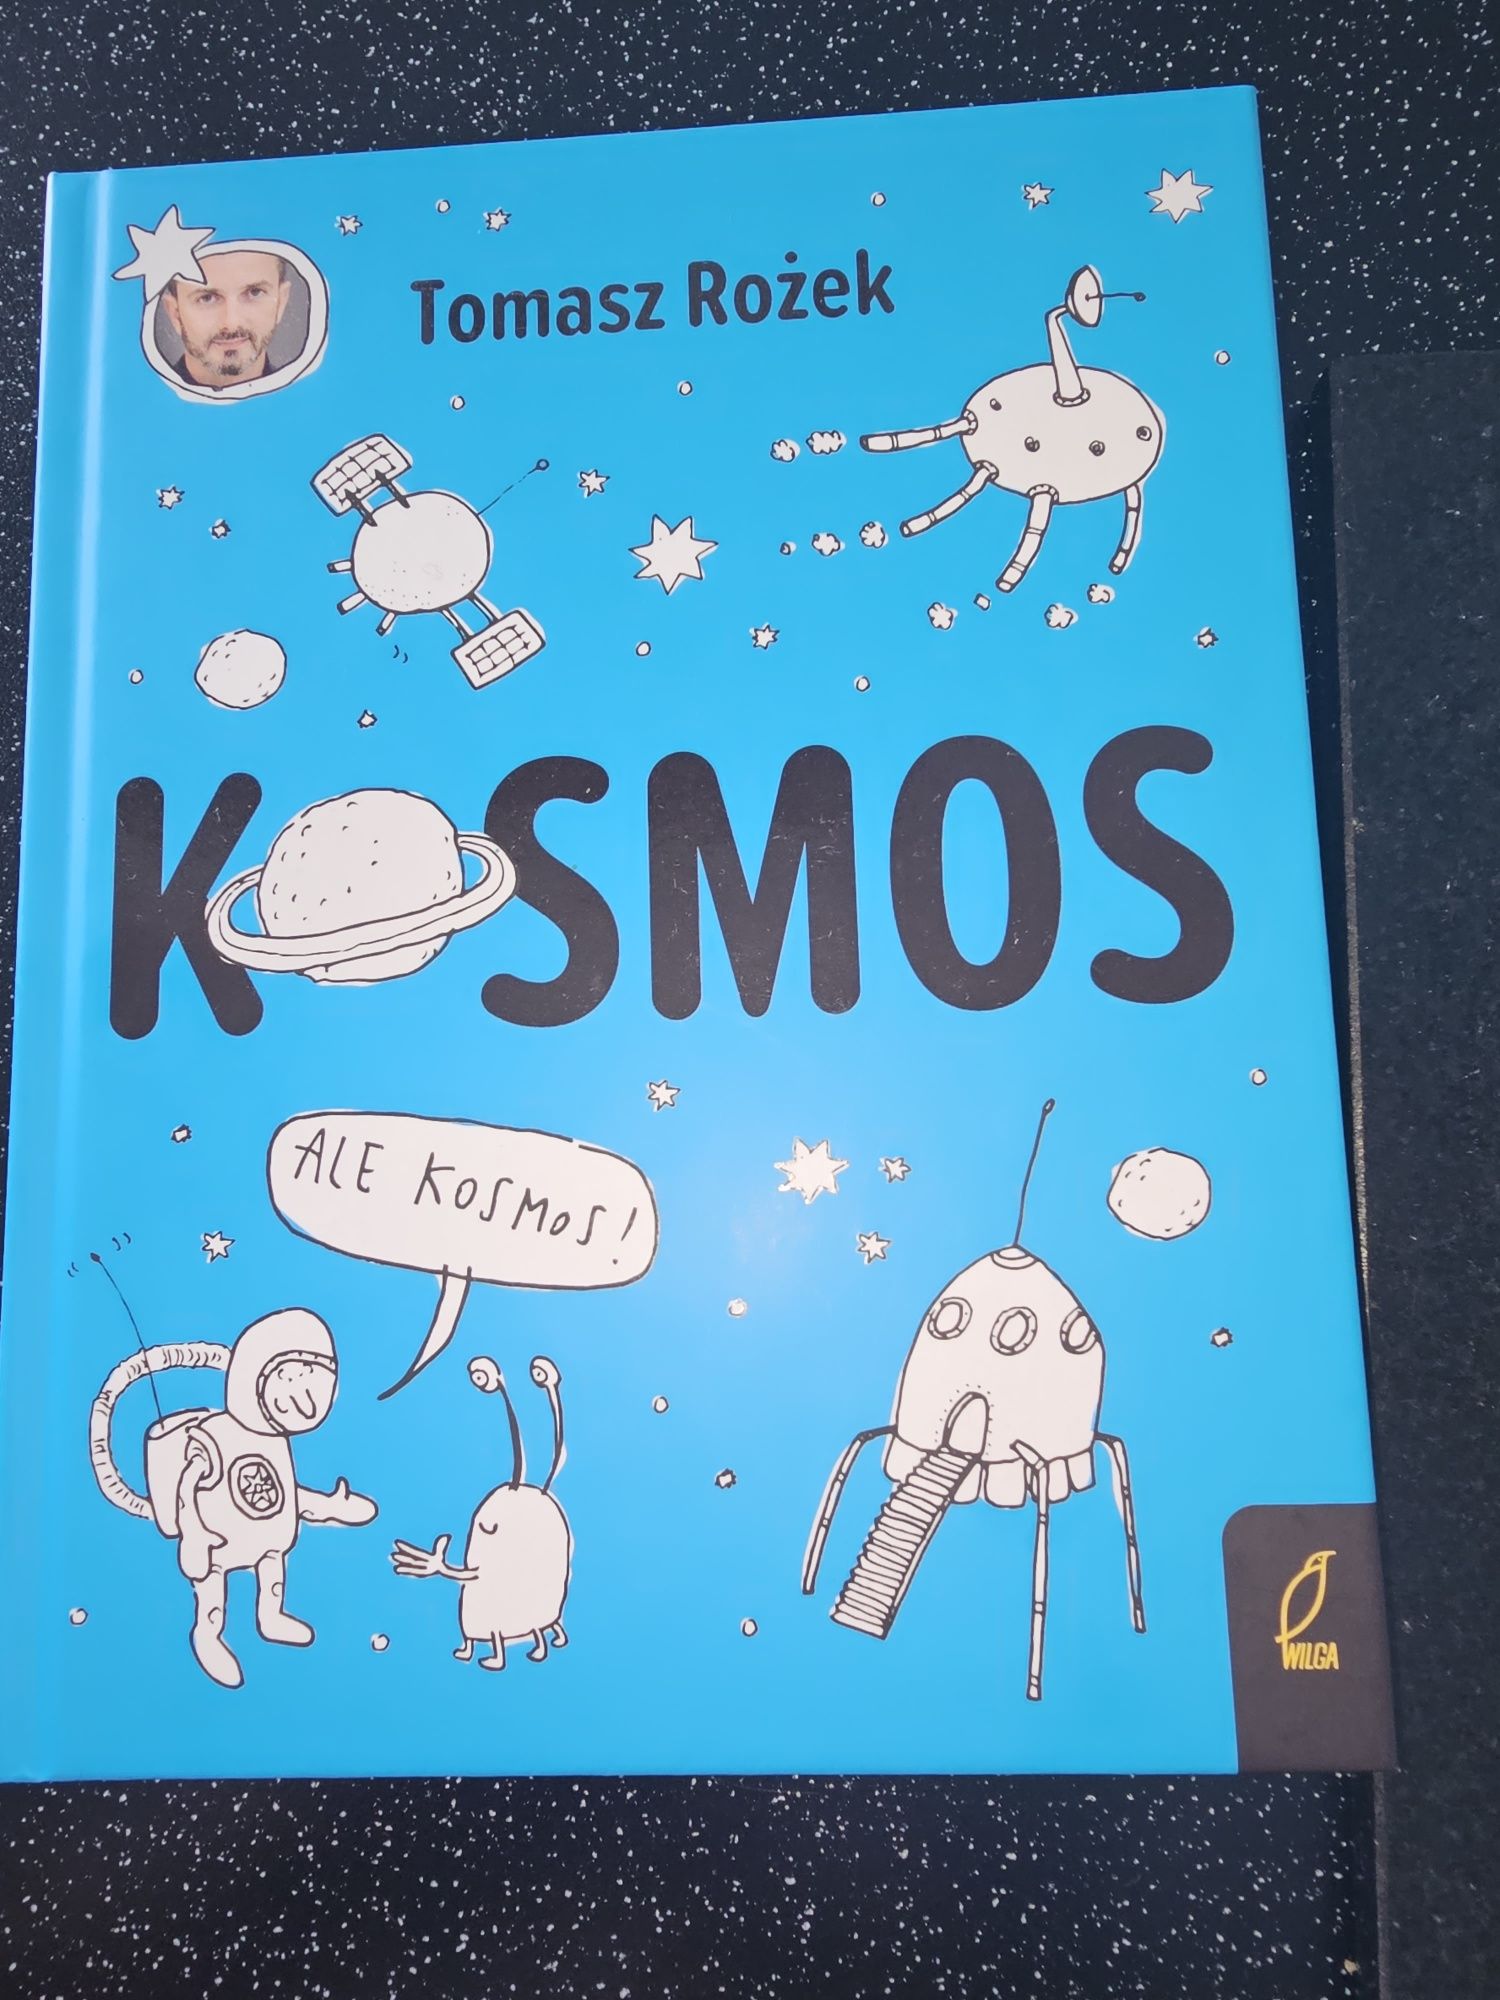 Książka "Kosmos" Tomasz Rożek